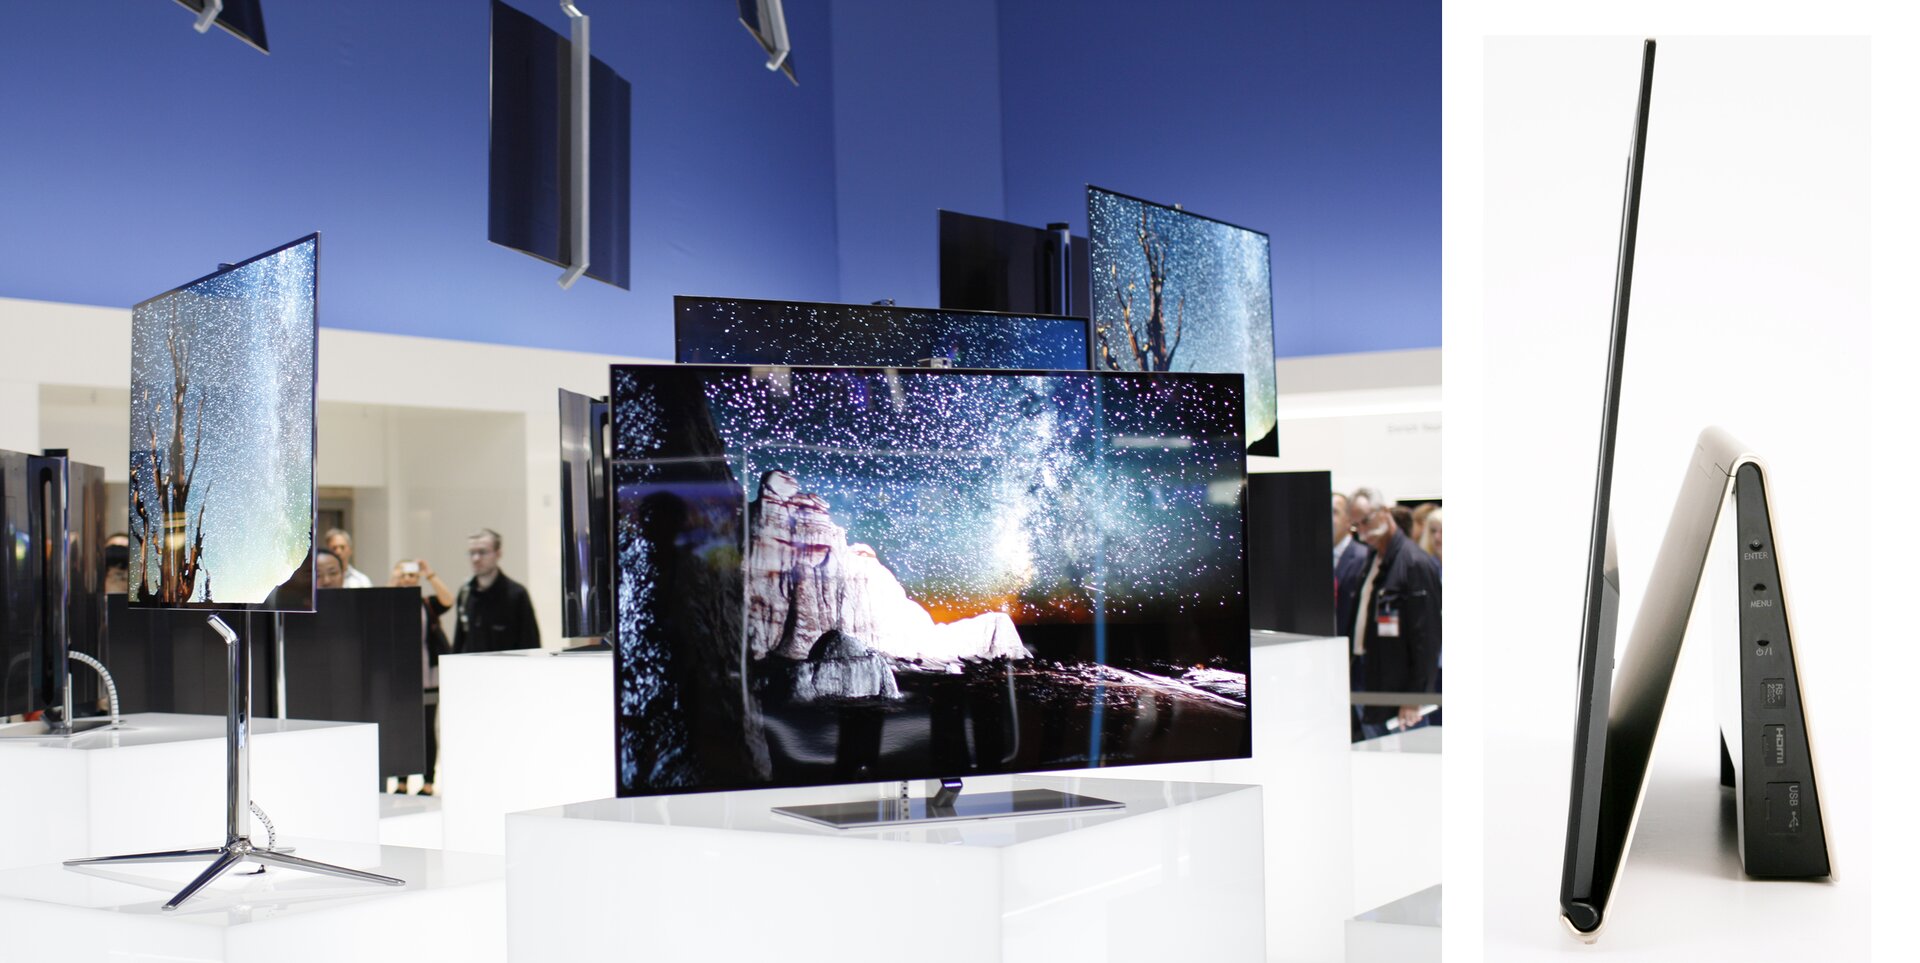 Na zdjęciu wystawa, na której przedstawiano różnego typu urządzenia z ekranami wykonanymi w technologii organicznych diod elektroluminescencyjnych (OLED). Większość kadru zajmują urządzenia z wyświetlonymi obrazkami, w tle widać ludzi.